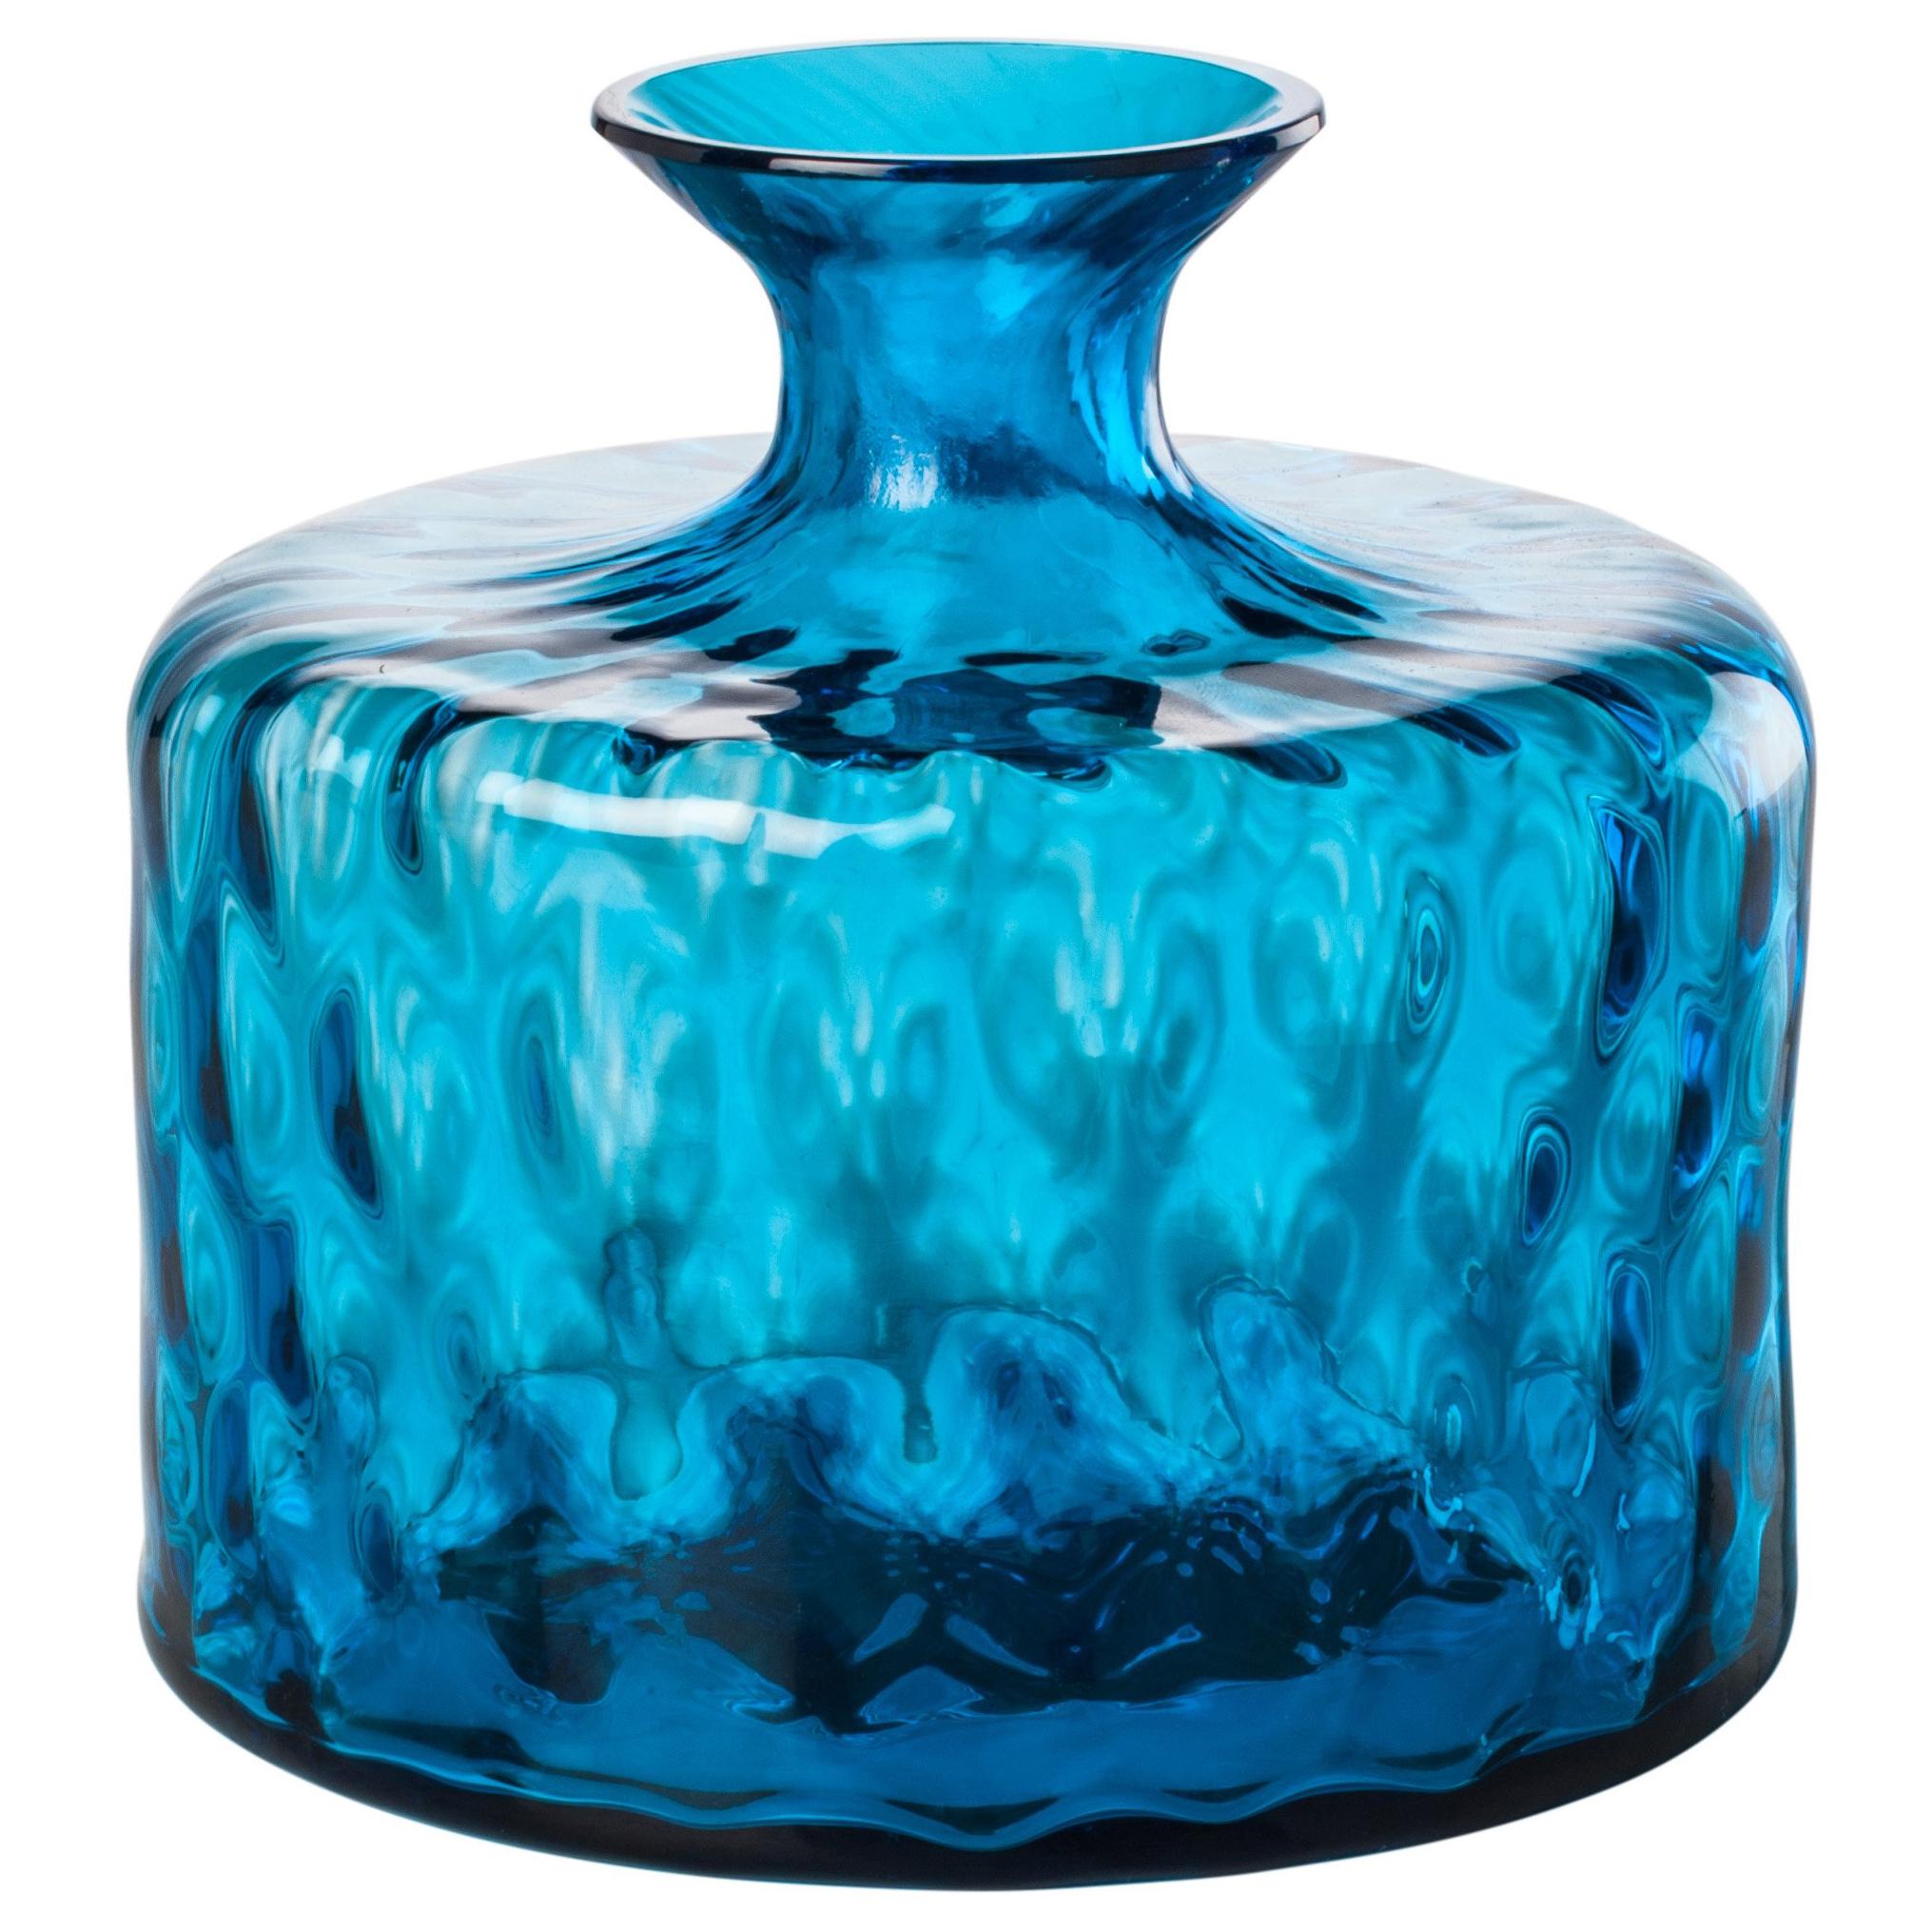 Monofiore Carnevale Short Glass Vase in Aquamarine by Venini